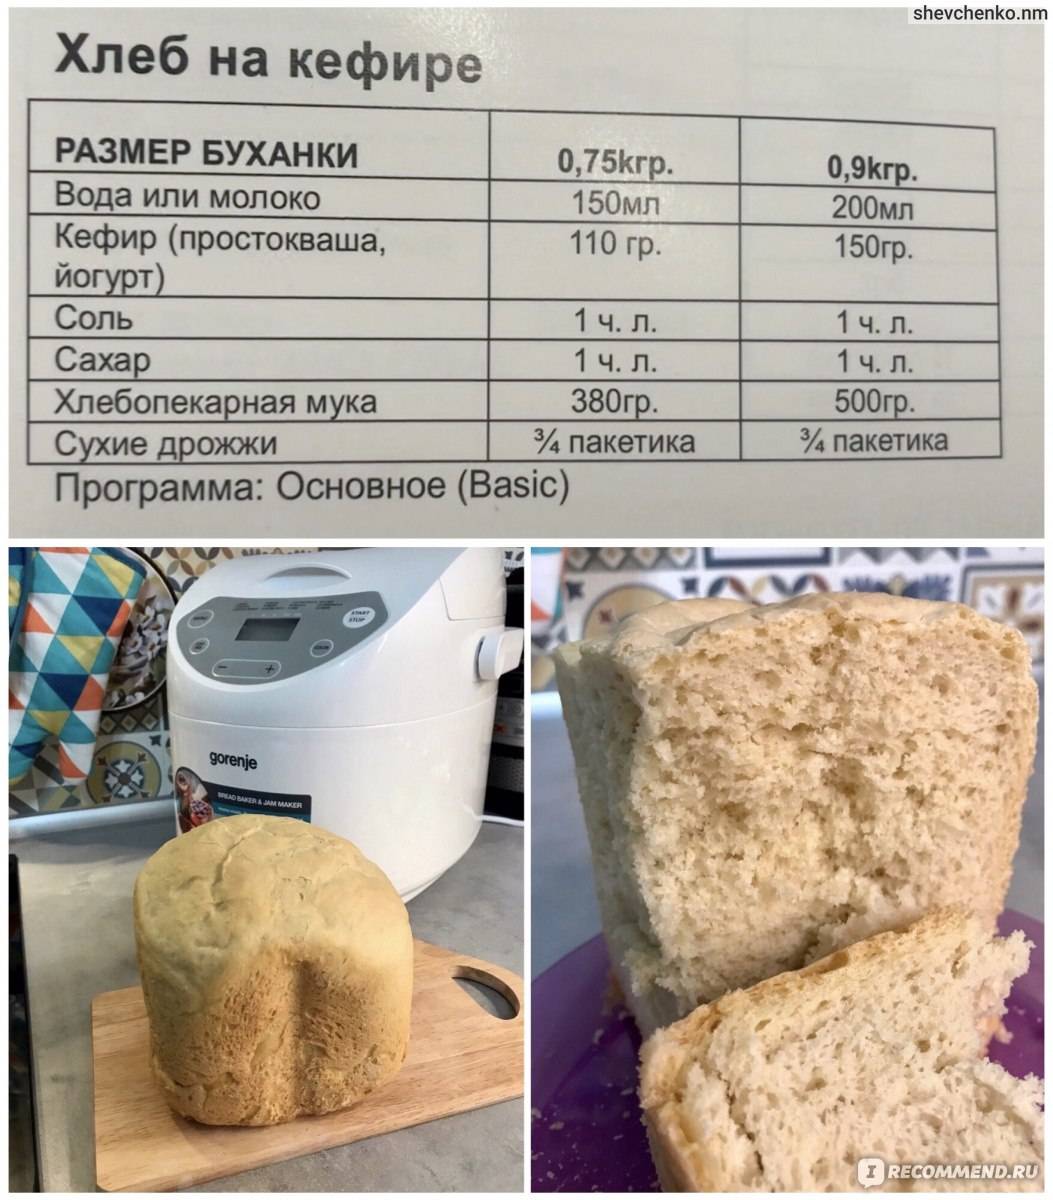 Как пользоваться хлебопечкой. как пользоваться домашней хлебопечкой